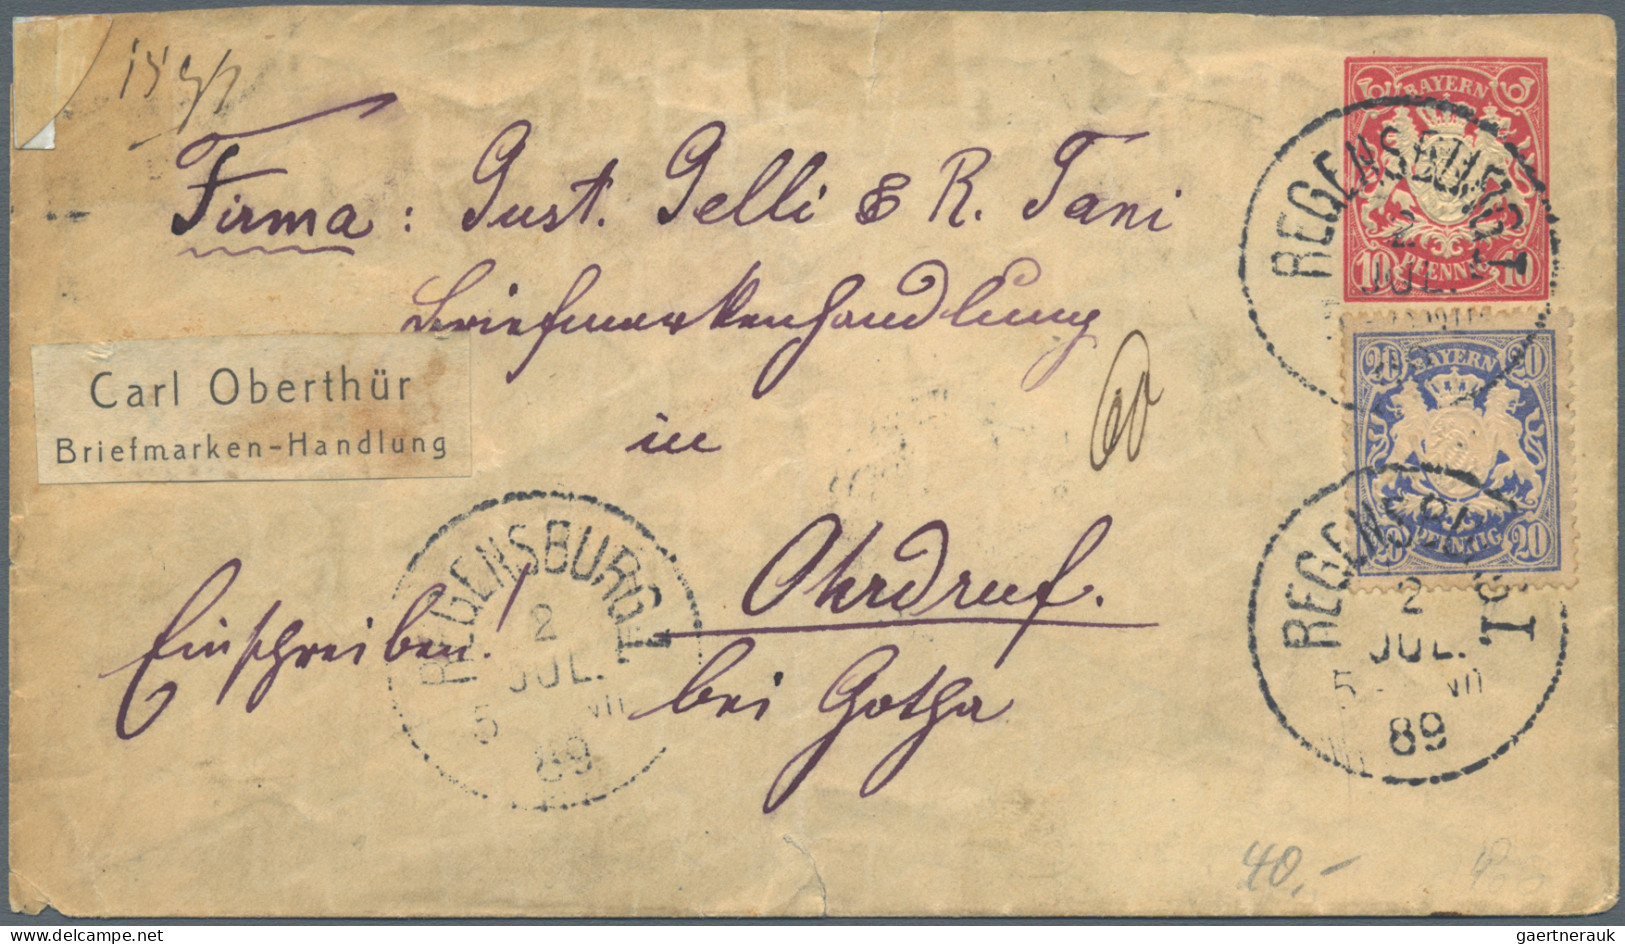 Bayern - Marken und Briefe: 1850/1919, Partie von ca. 53 Briefen und Karten, etw